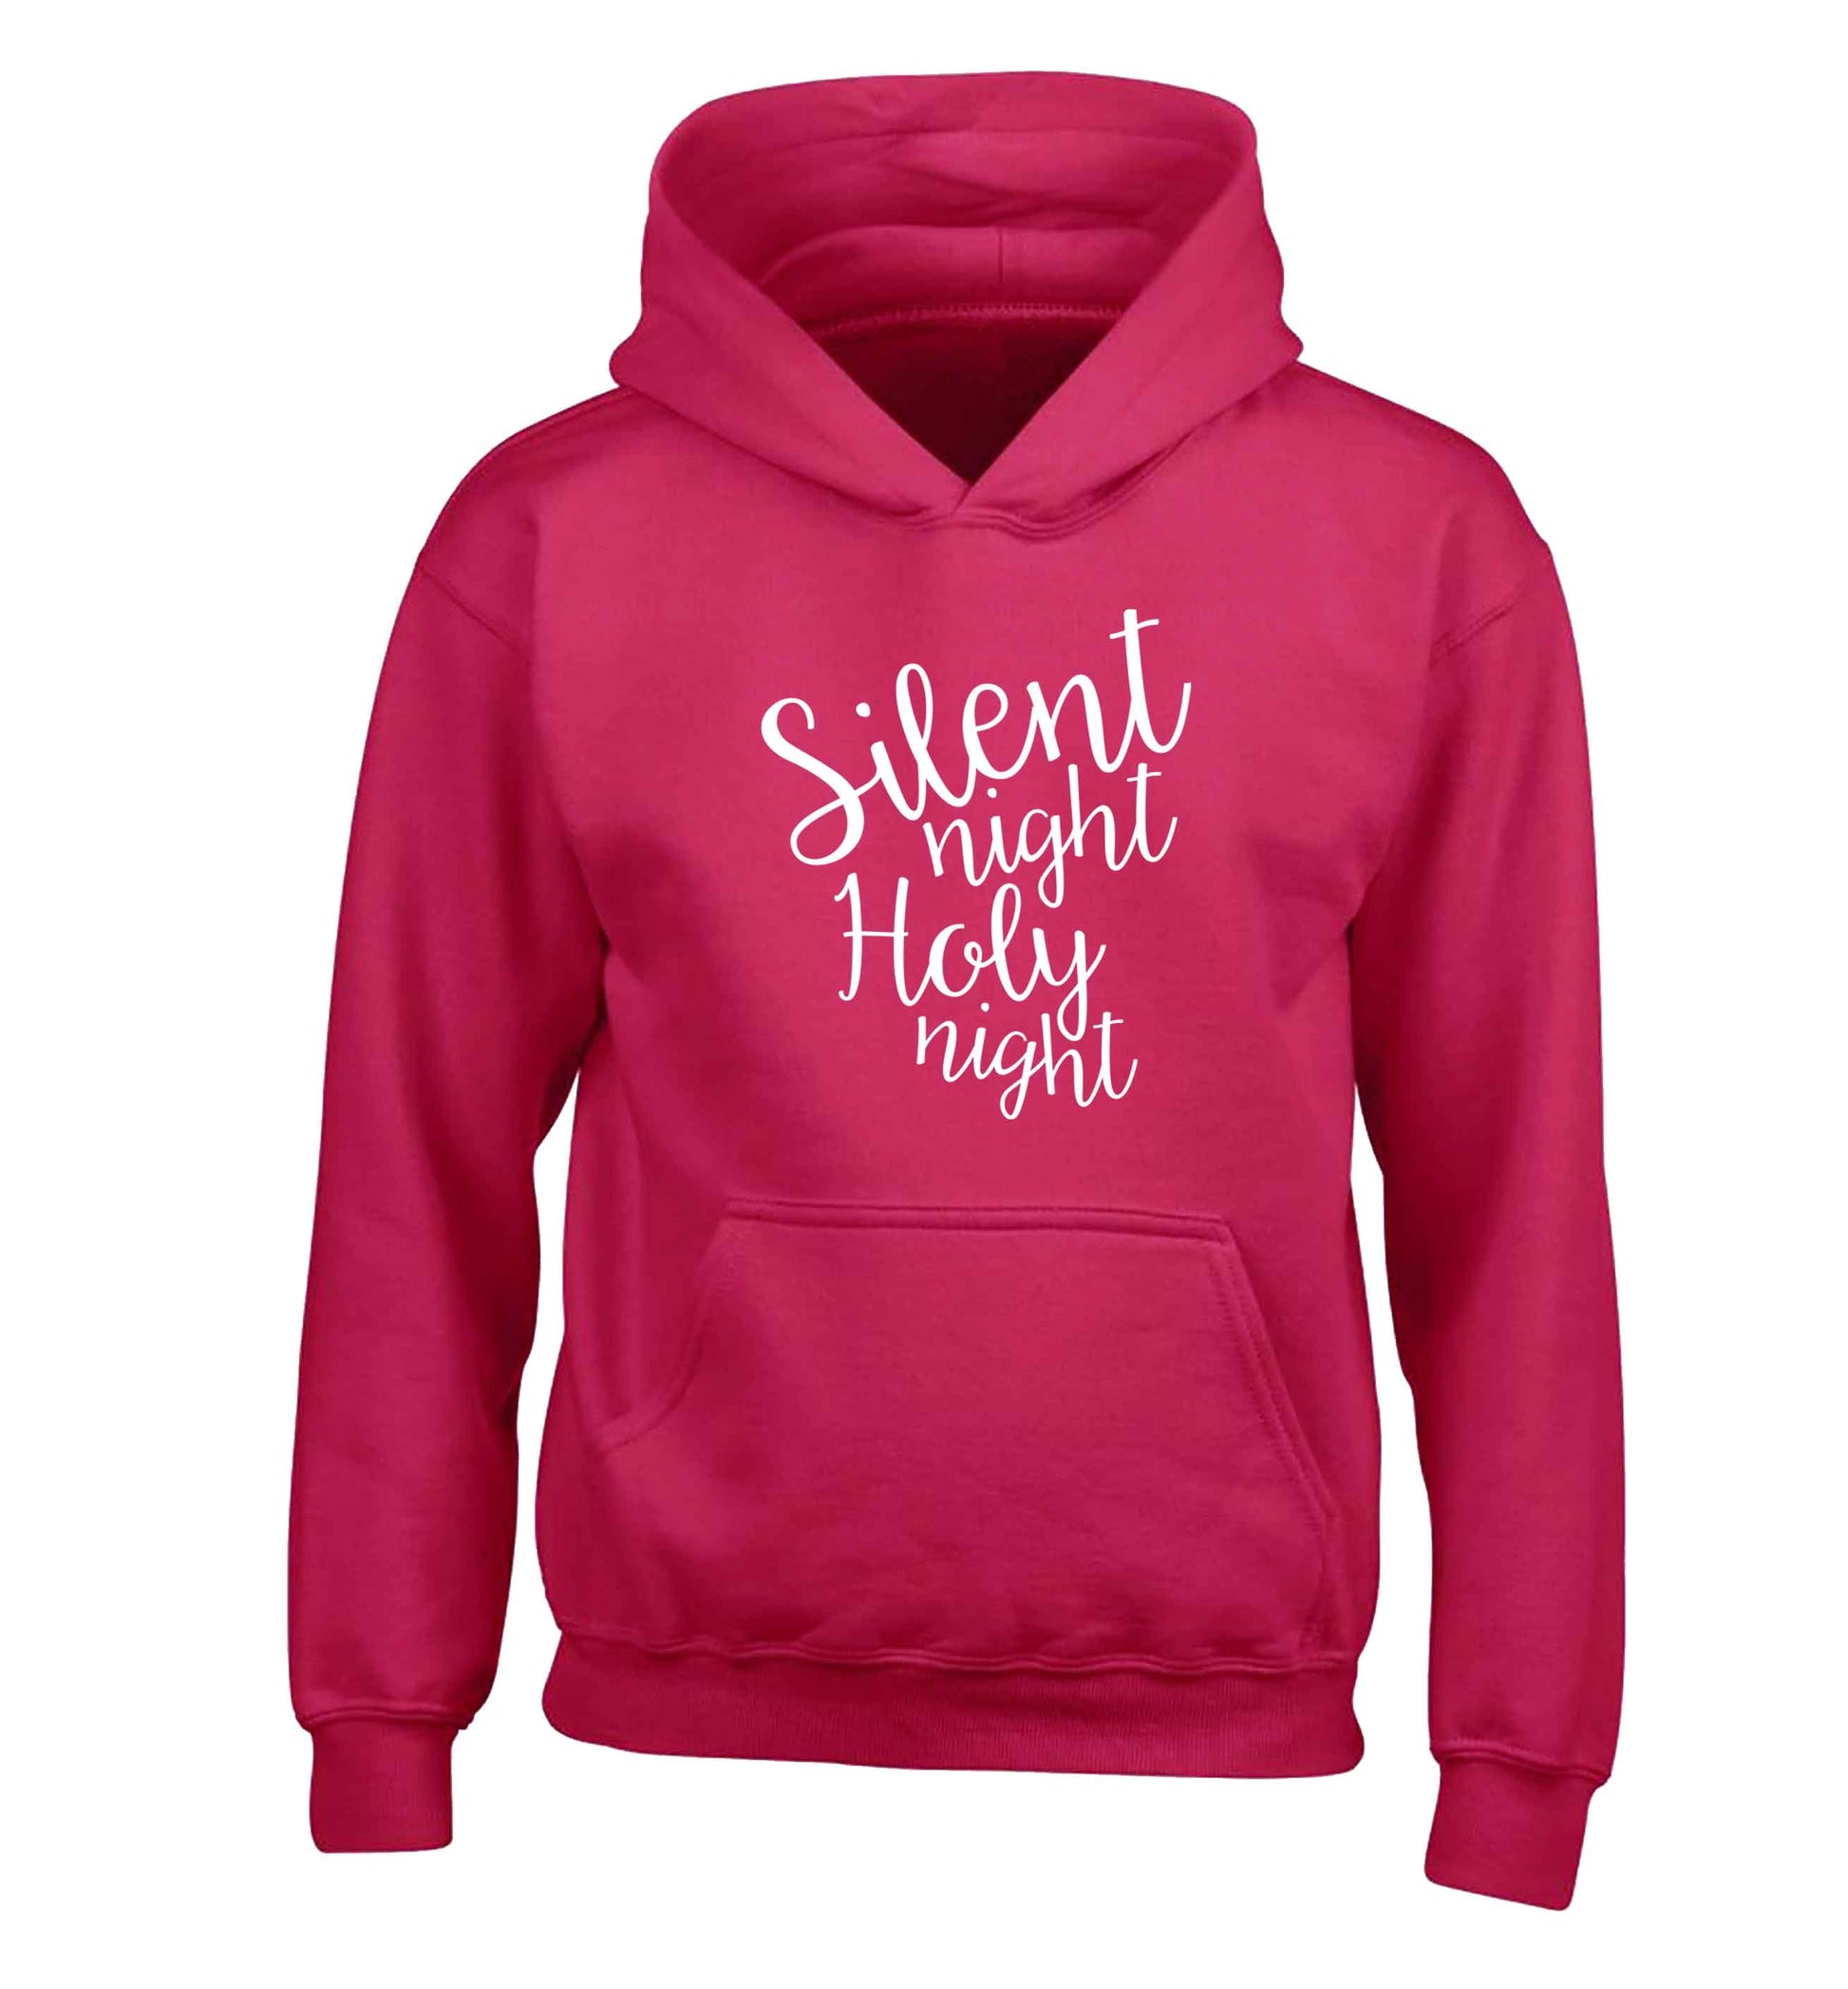 Silent night holy night children's pink hoodie 12-13 Years